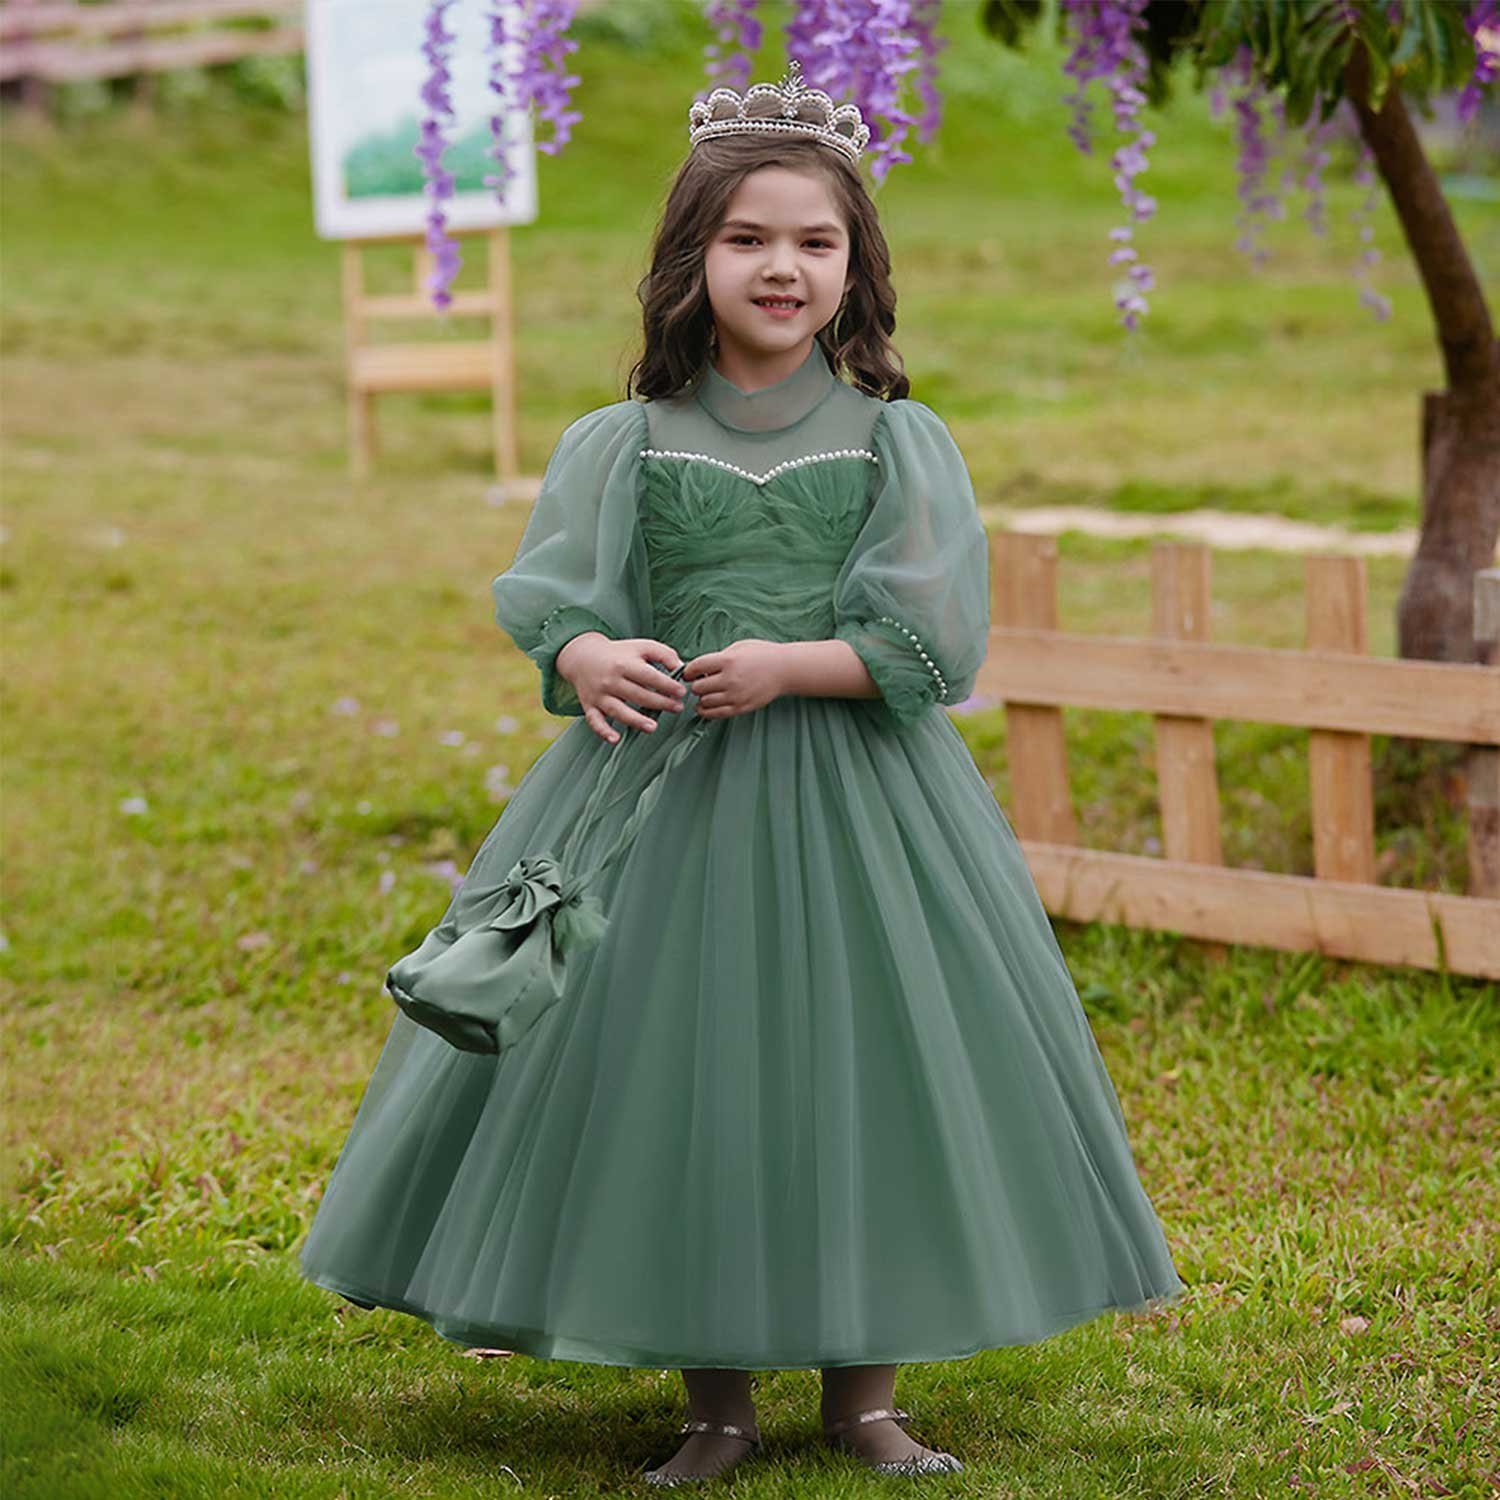 Grün Daisred Tüllkleid Blumenmädchenkleid Geburtstagsparty Prinzessinnenkleid